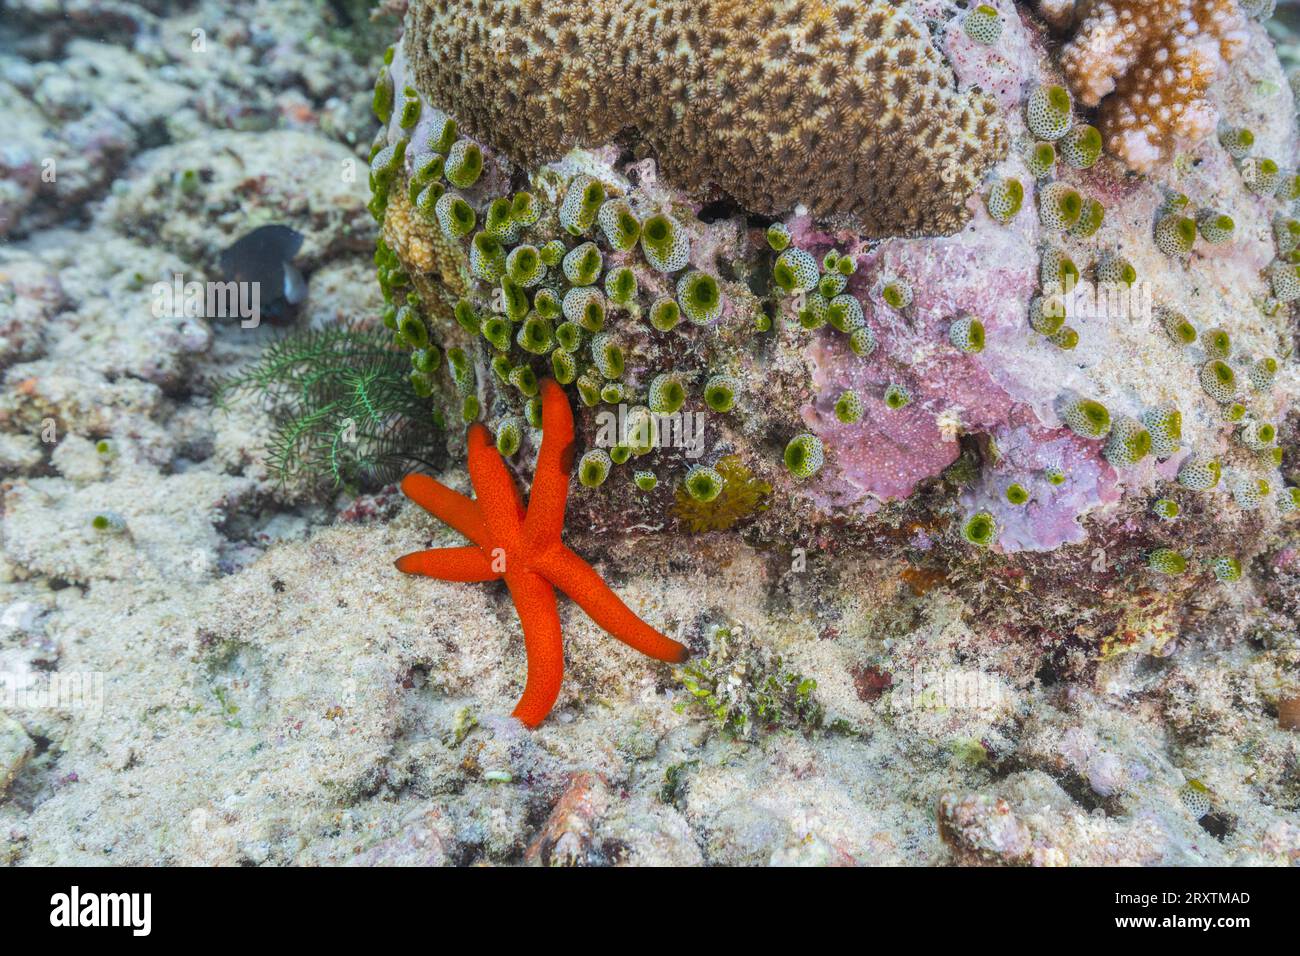 Una stella marina di Luzon adulta (Echinaster luzonicus), nelle scogliere poco profonde al largo dell'isola di Bangka, Indonesia, Sud-est asiatico, Asia Foto Stock